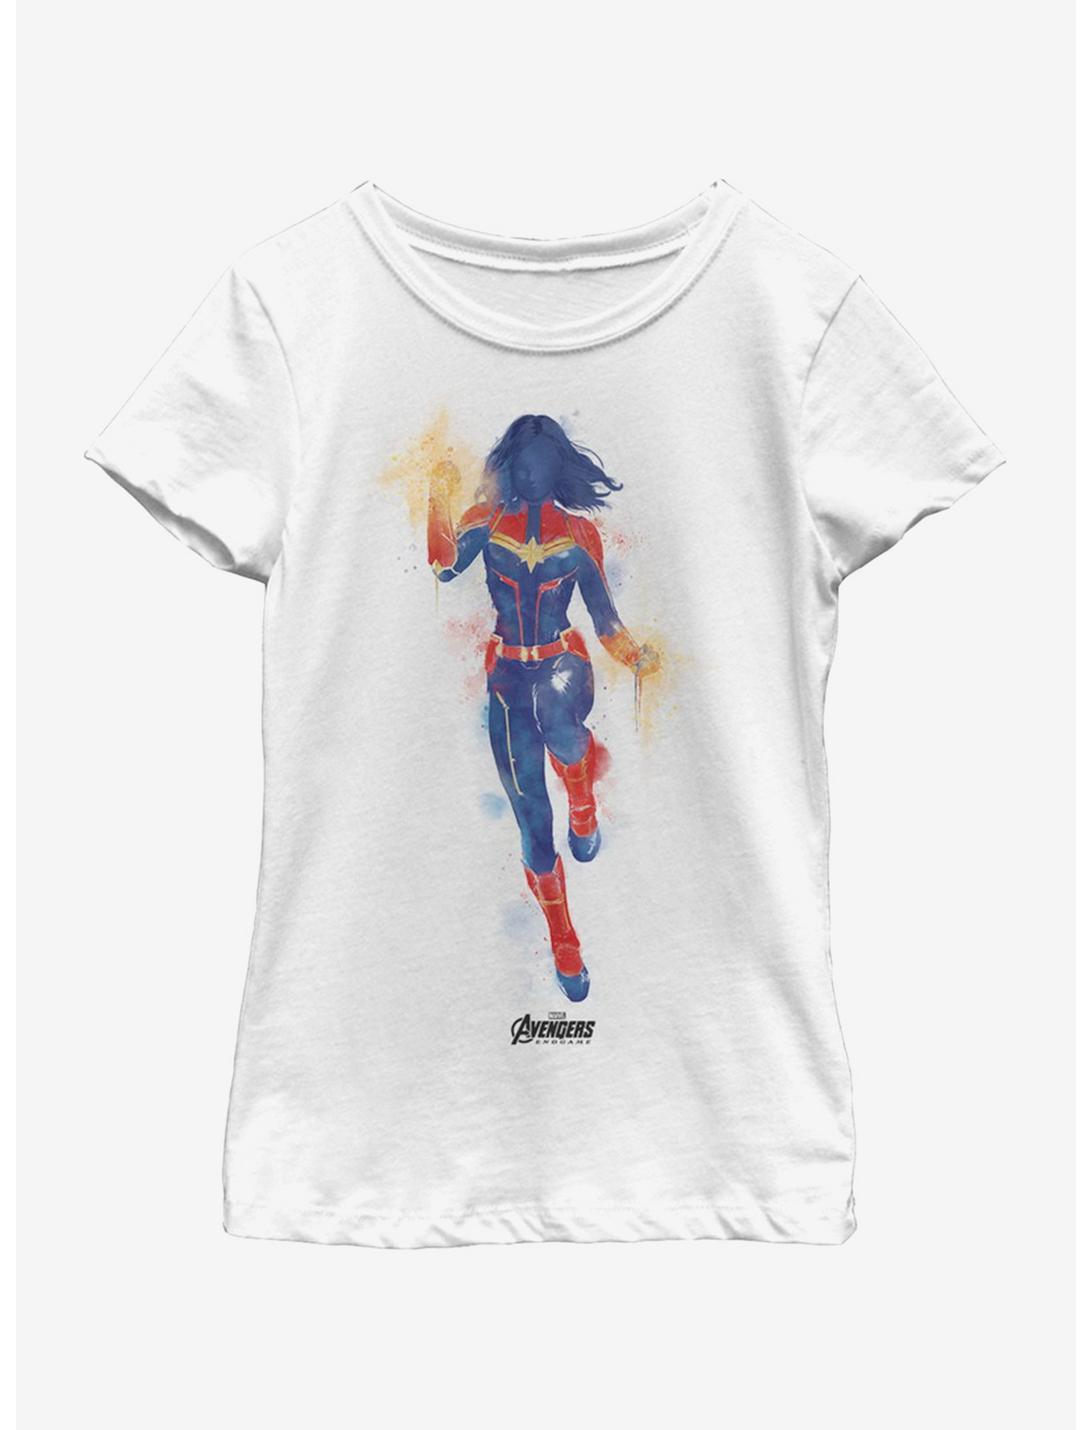 Marvel Avengers: Endgame Marvel Painted Youth Girls T-Shirt, WHITE, hi-res